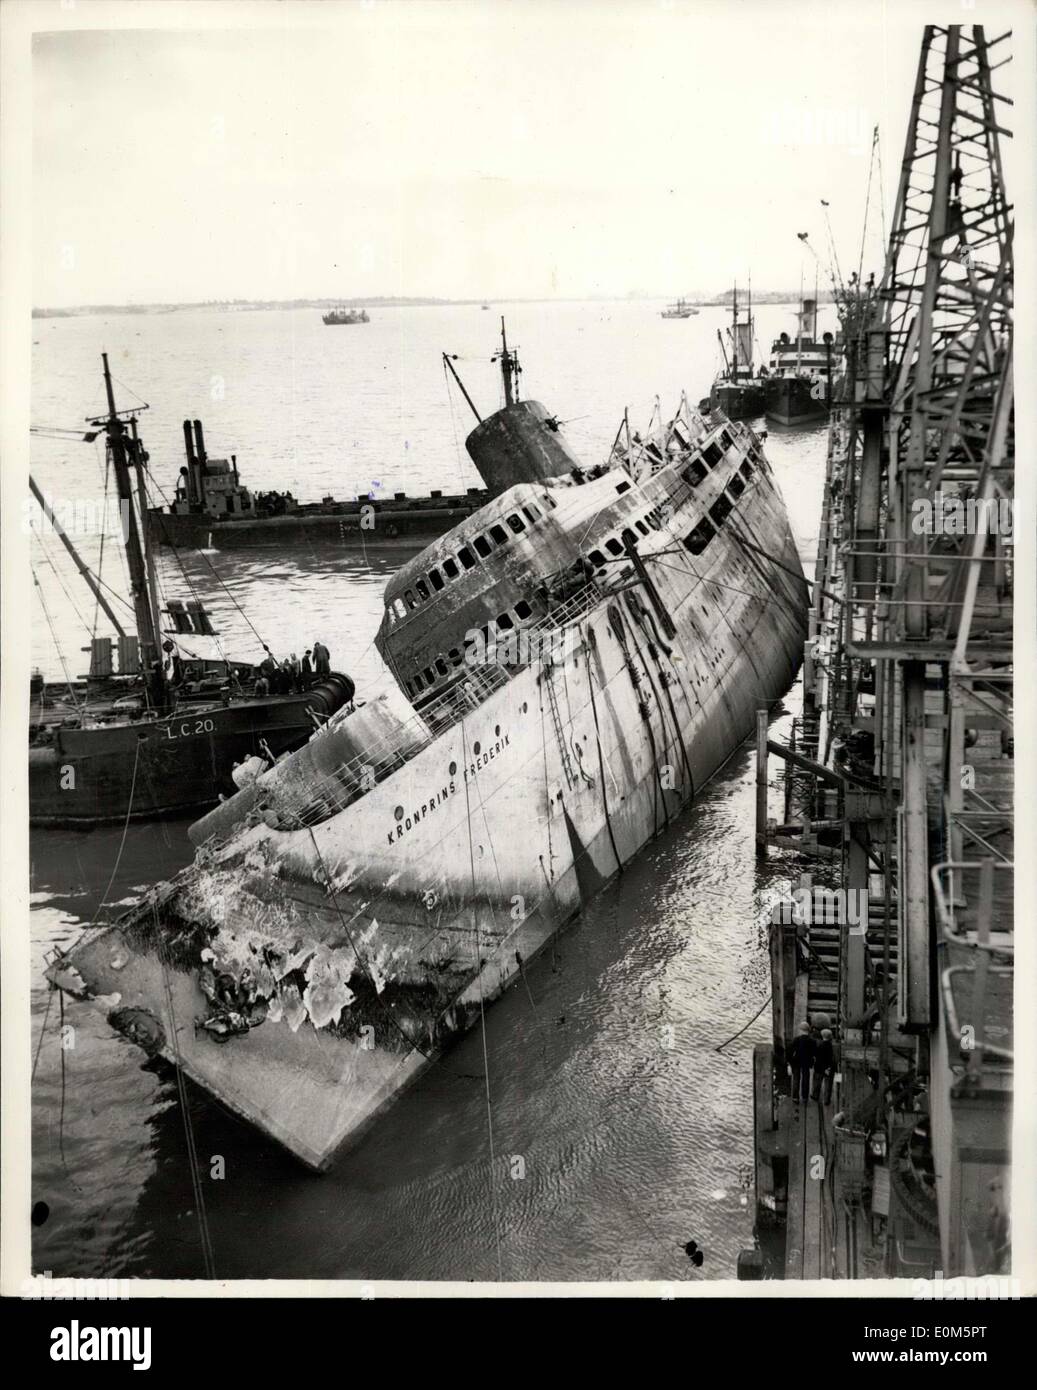 Agosto 26, 1953 - Il sollevamento del ''Kronprins Frederick'': gli sforzi per elevare il sunken liner danese, ''Kronprins Frederick'', che capaised e affondato dopo essere stata spazzata via dai fuoco a Harwich, in aprile, vengono fatte oggi. Recuperare gli uomini hanno iniziato questa mattina a sollevarla. Mostra immagine: i preparativi per il sollevamento ha iniziato alle 6.30 di questa mattina - e questa è stata la scena a 11.30 mostra la nave a trenta gradi elenco. Foto Stock